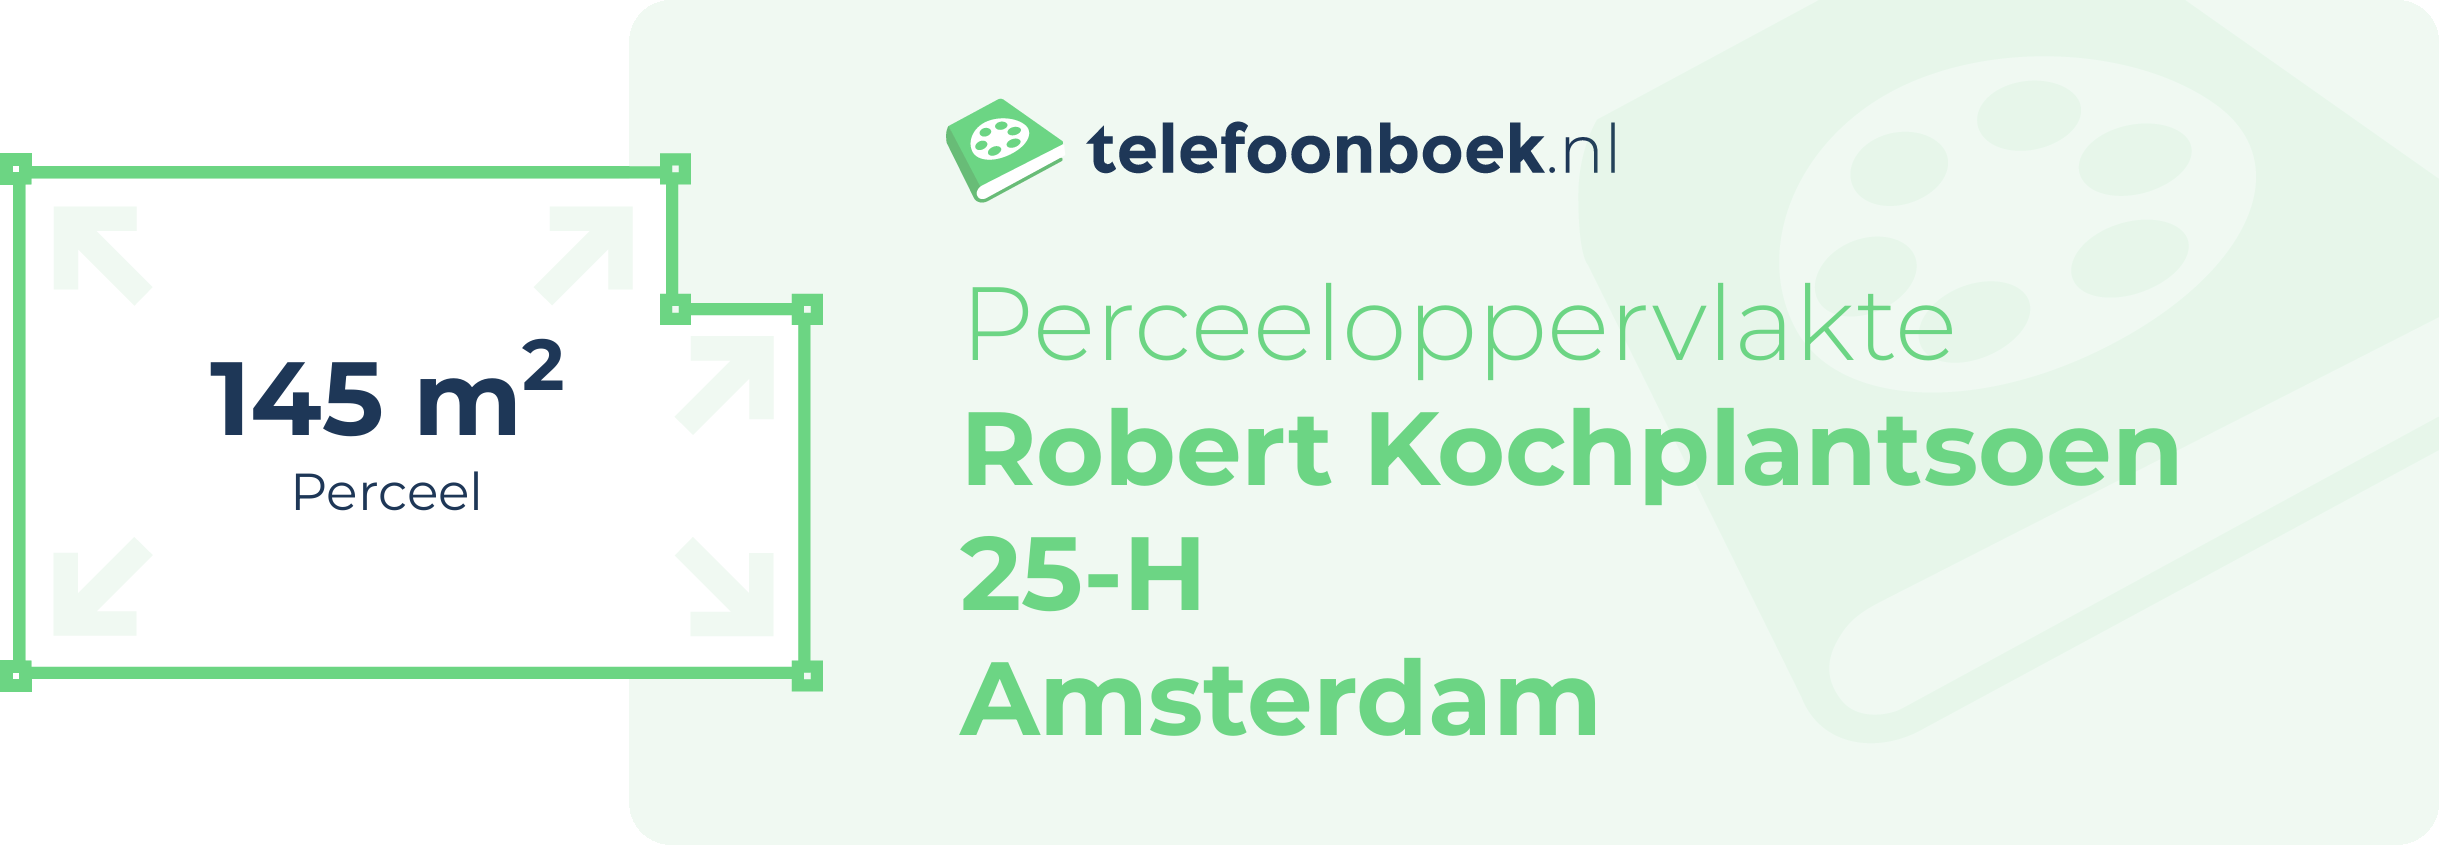 Perceeloppervlakte Robert Kochplantsoen 25-H Amsterdam